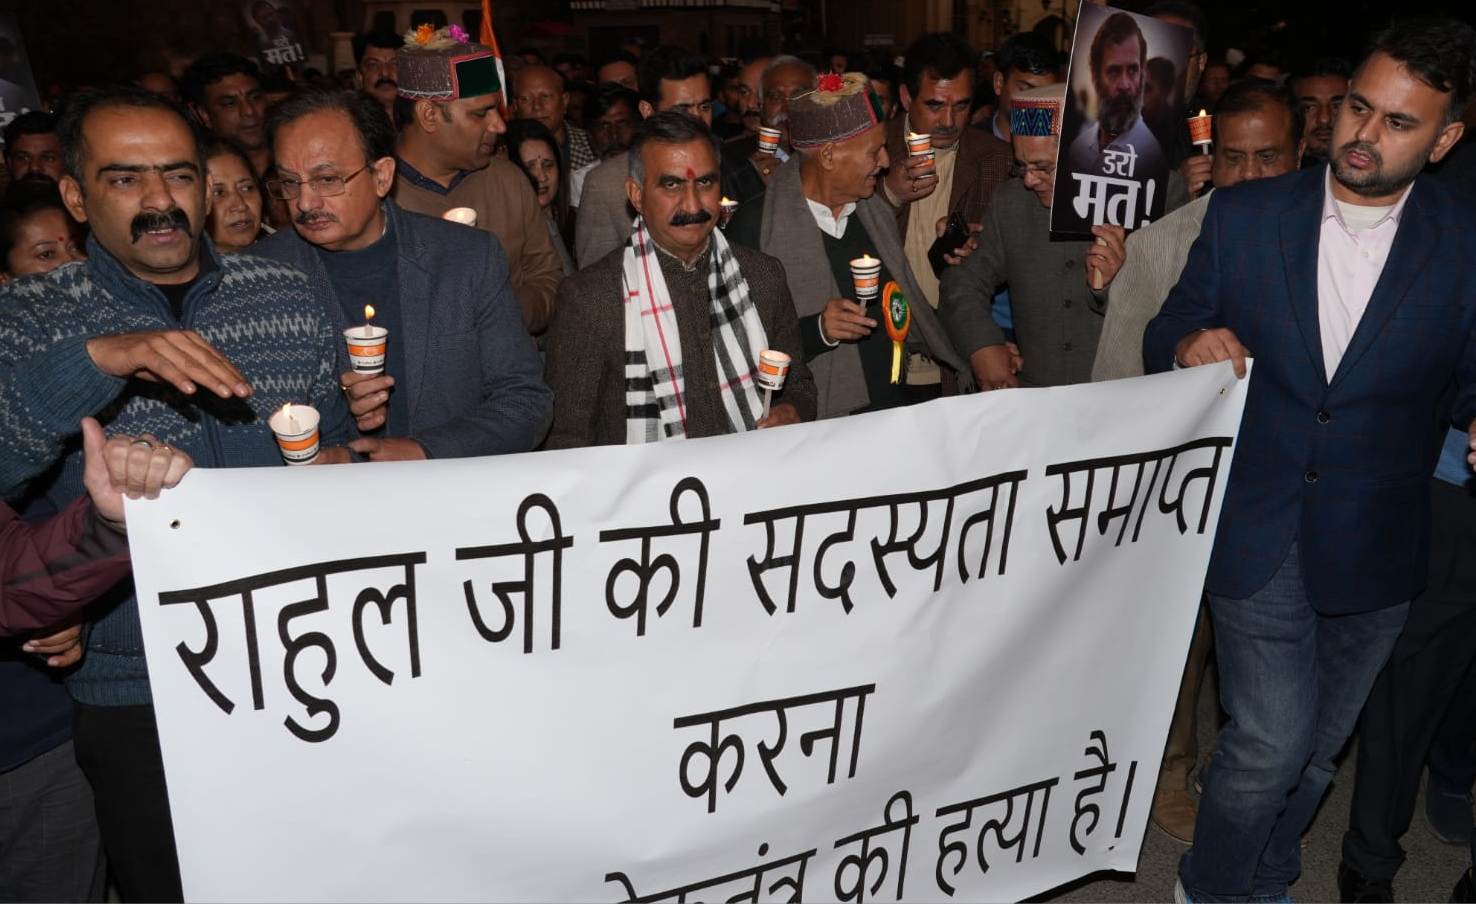 शिमला में गांधी की प्रतिमा के आगे कांग्रेस नेताओं व कार्यकर्ताओं ने केंद्र सरकार के खिलाफ किया सत्यग्रह, बोले- “डरो मत”